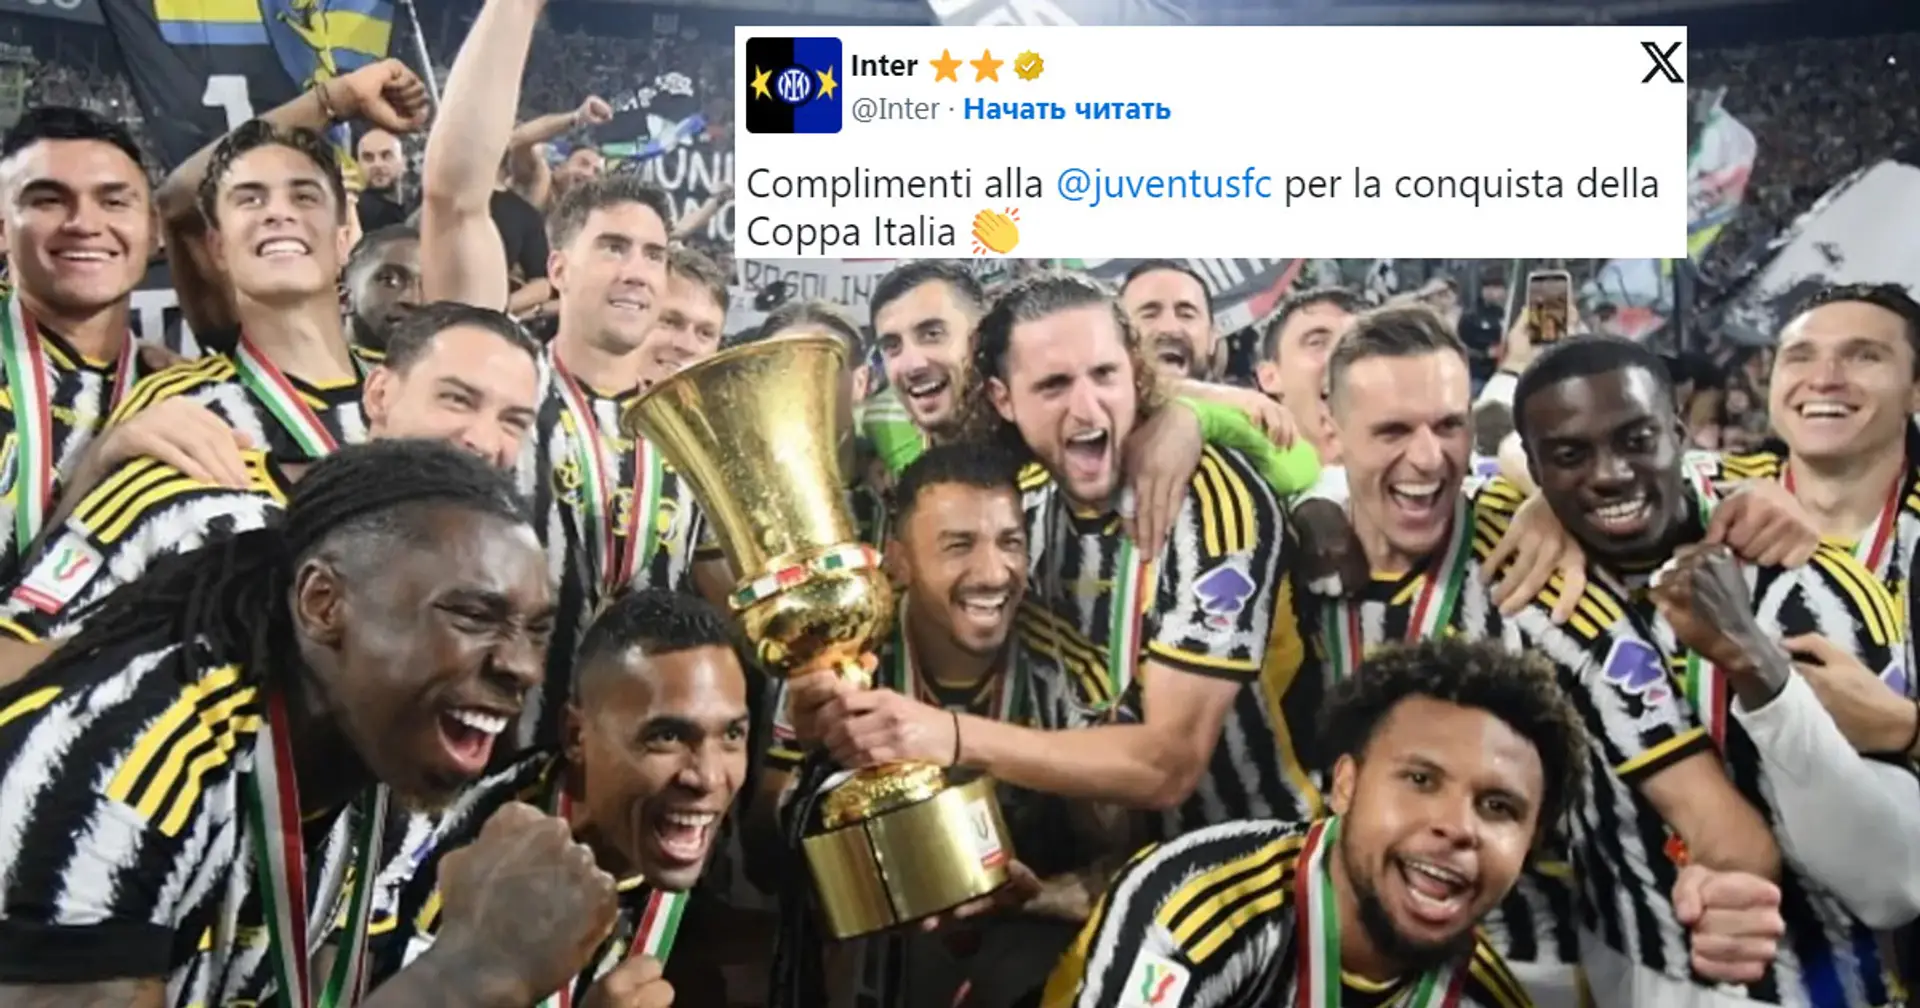 Lo stile non ha eguali in casa Nerazzurra: i complimenti dell'Inter alla Juventus per la vittoria della Coppa Italia